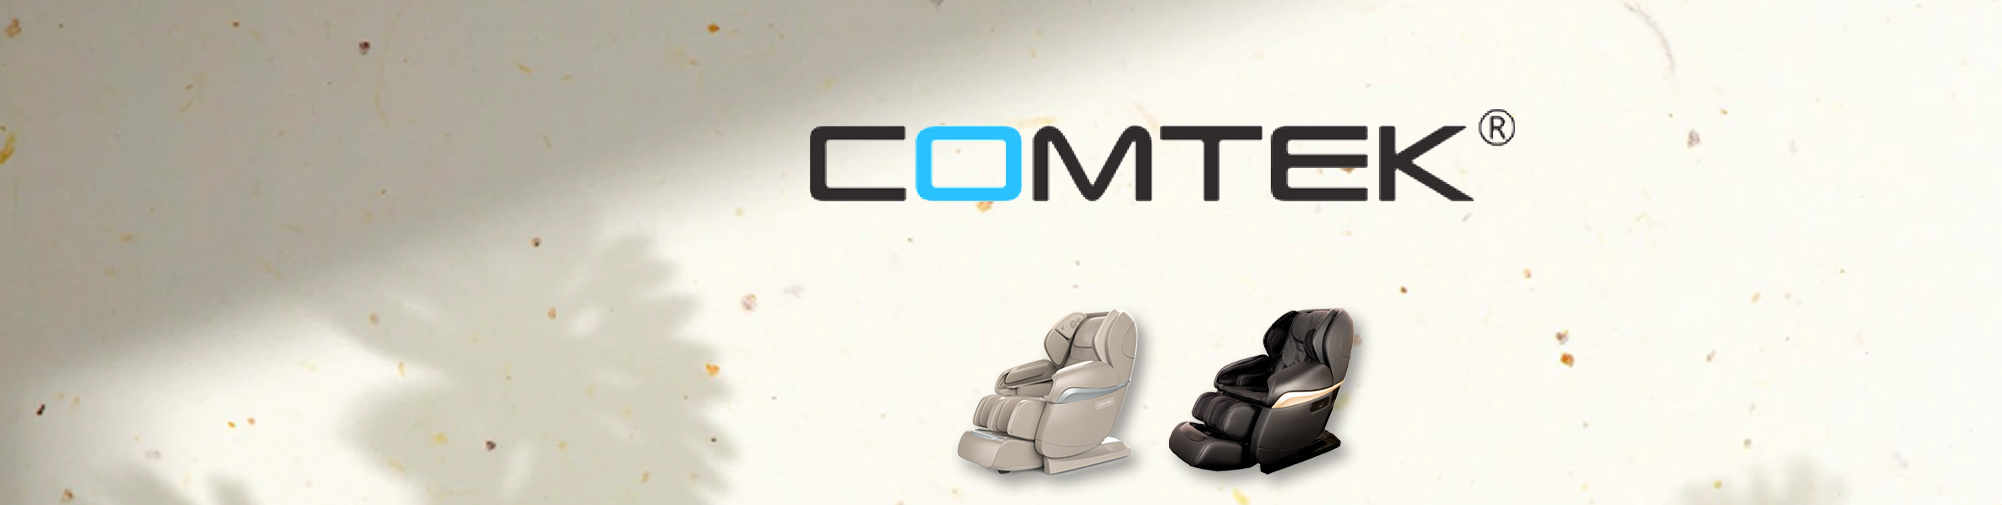 COMTEK - професійний оригінальний виробник | Світ масажних крісел